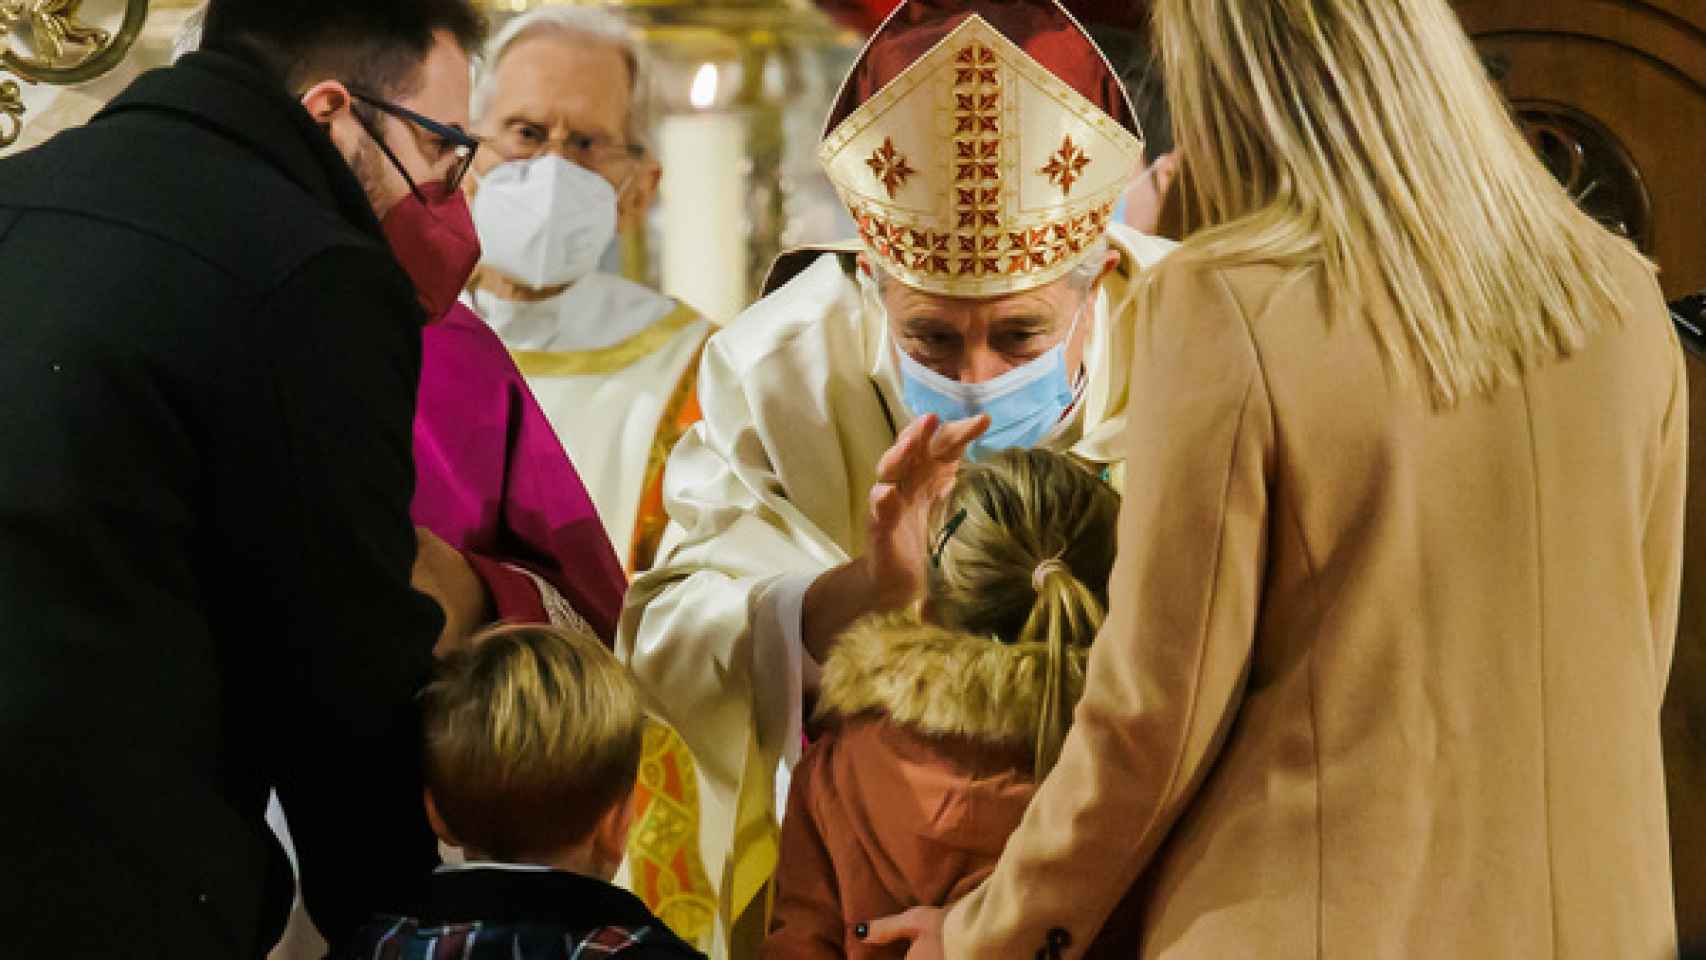 El nuevo obispo saluda a una niña